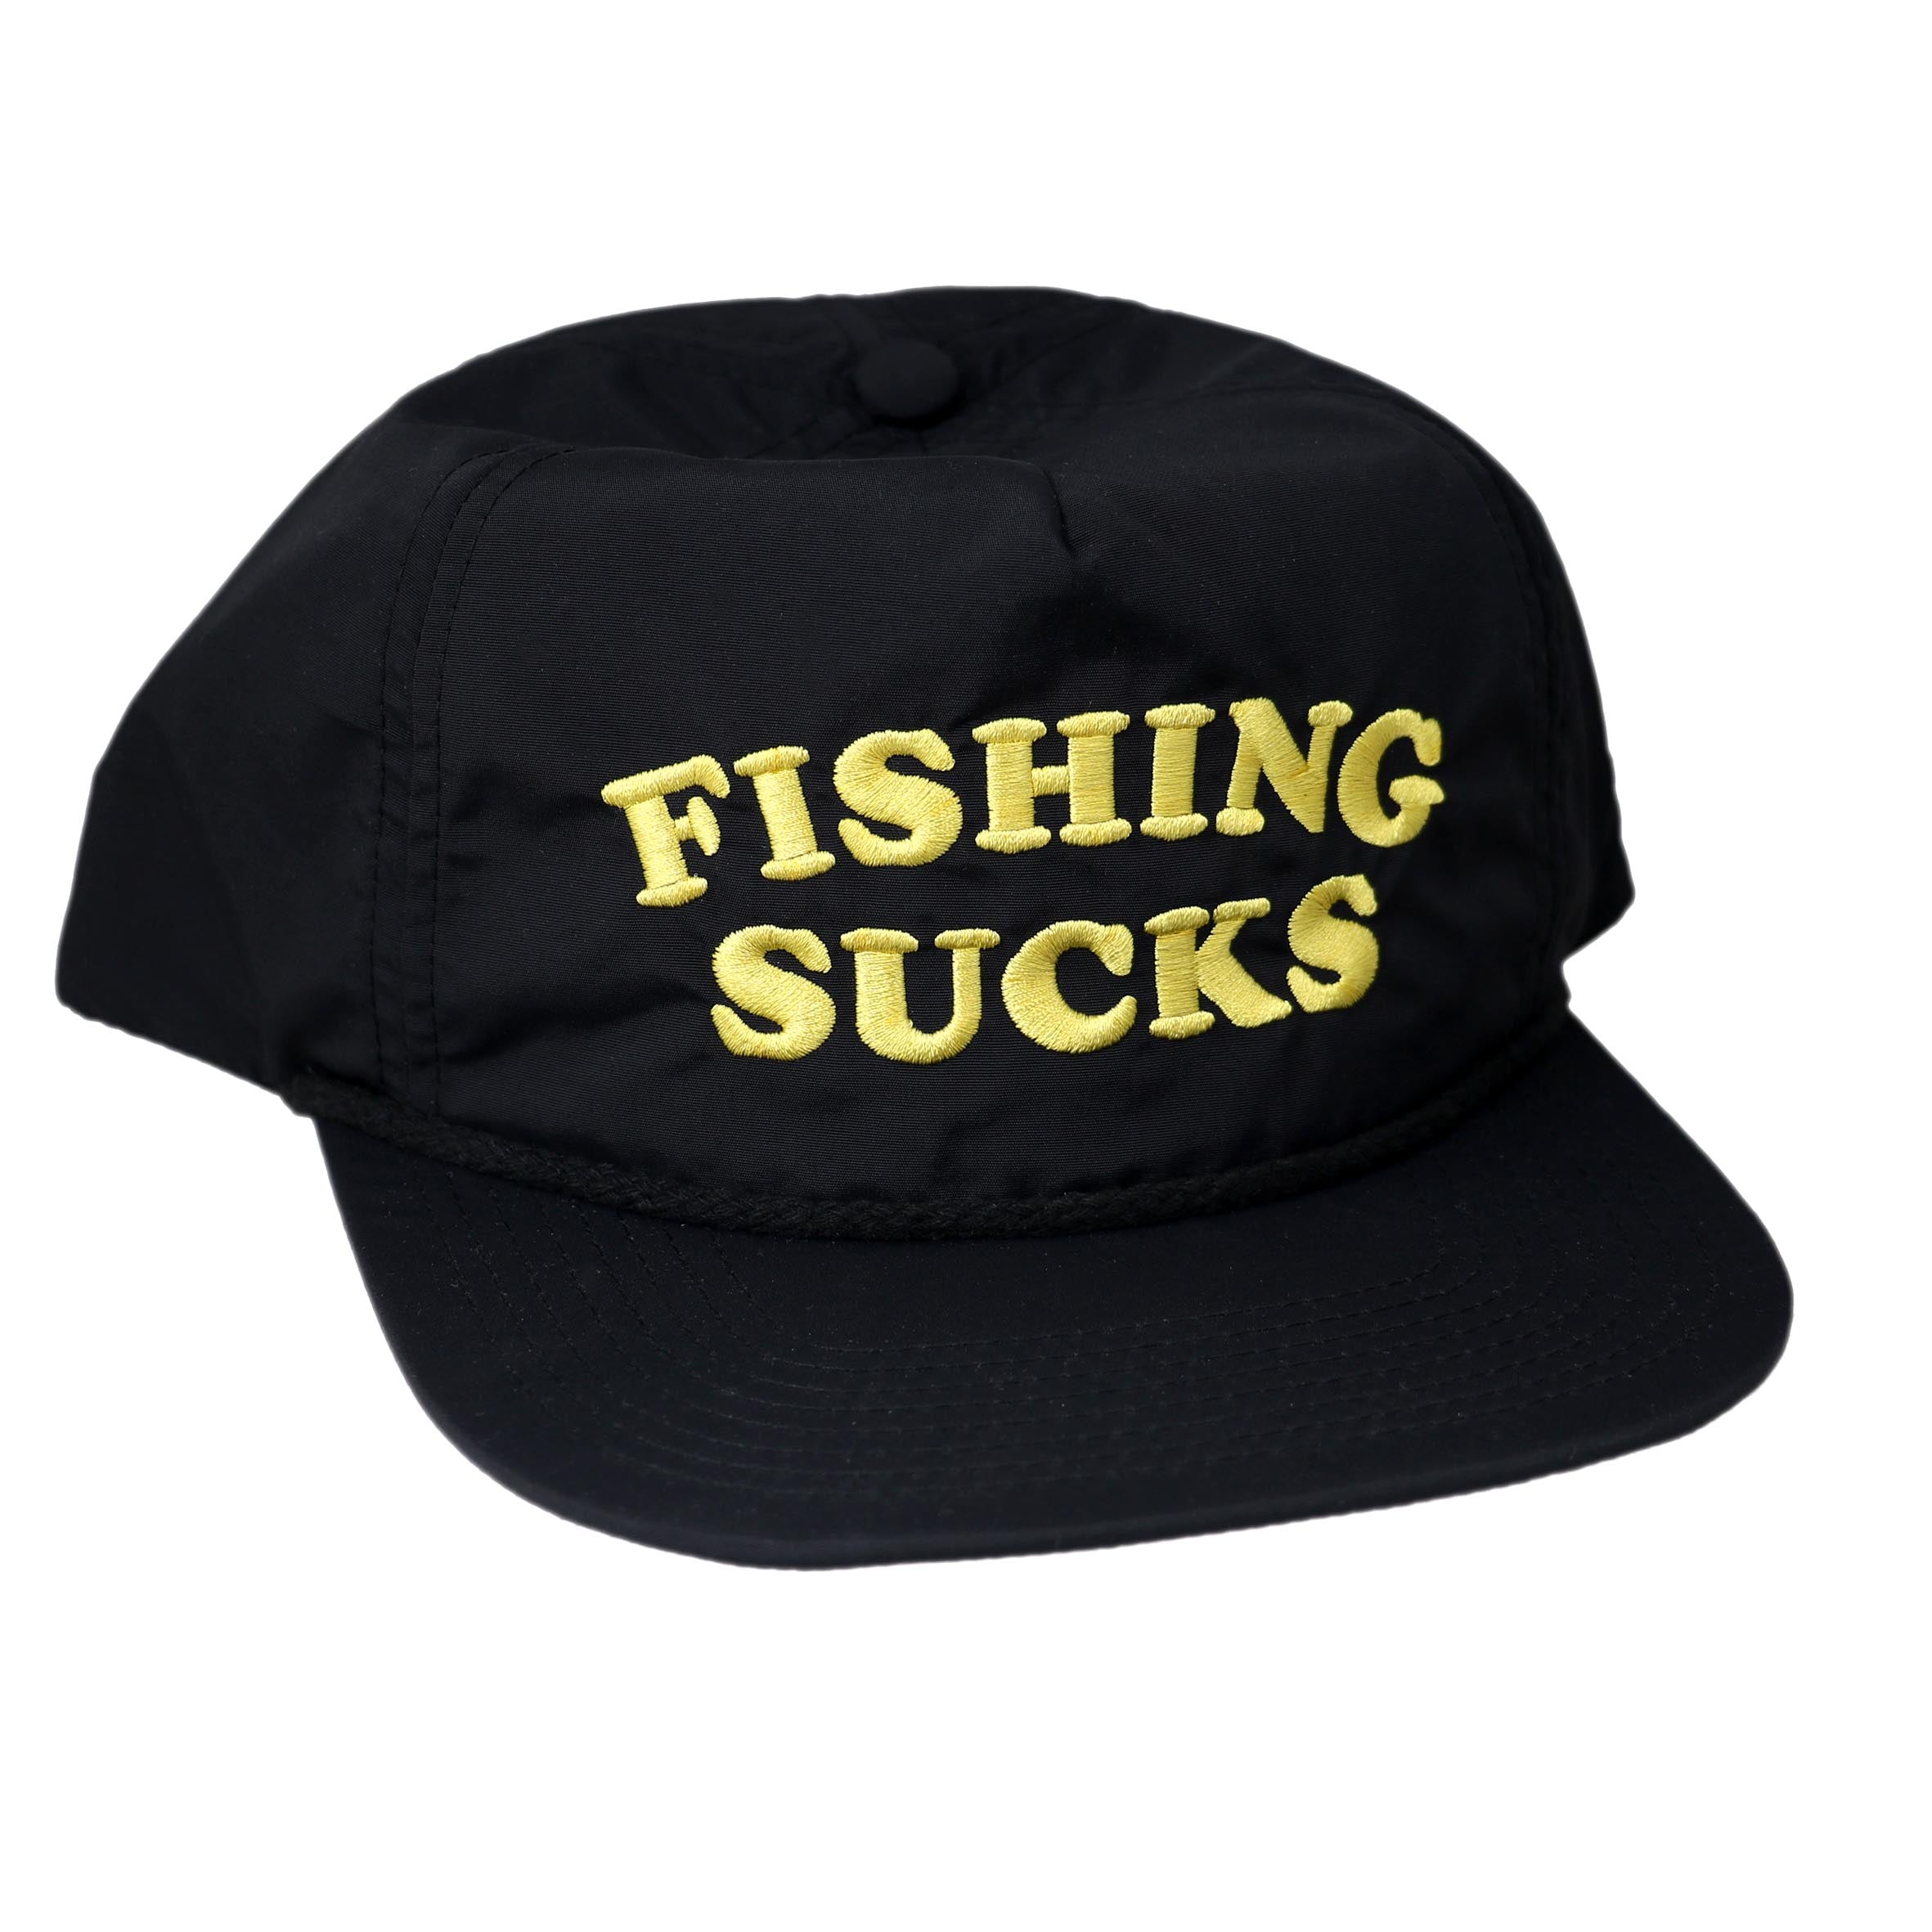 Fishing Sucks - Black Cap – Lobster Shanty